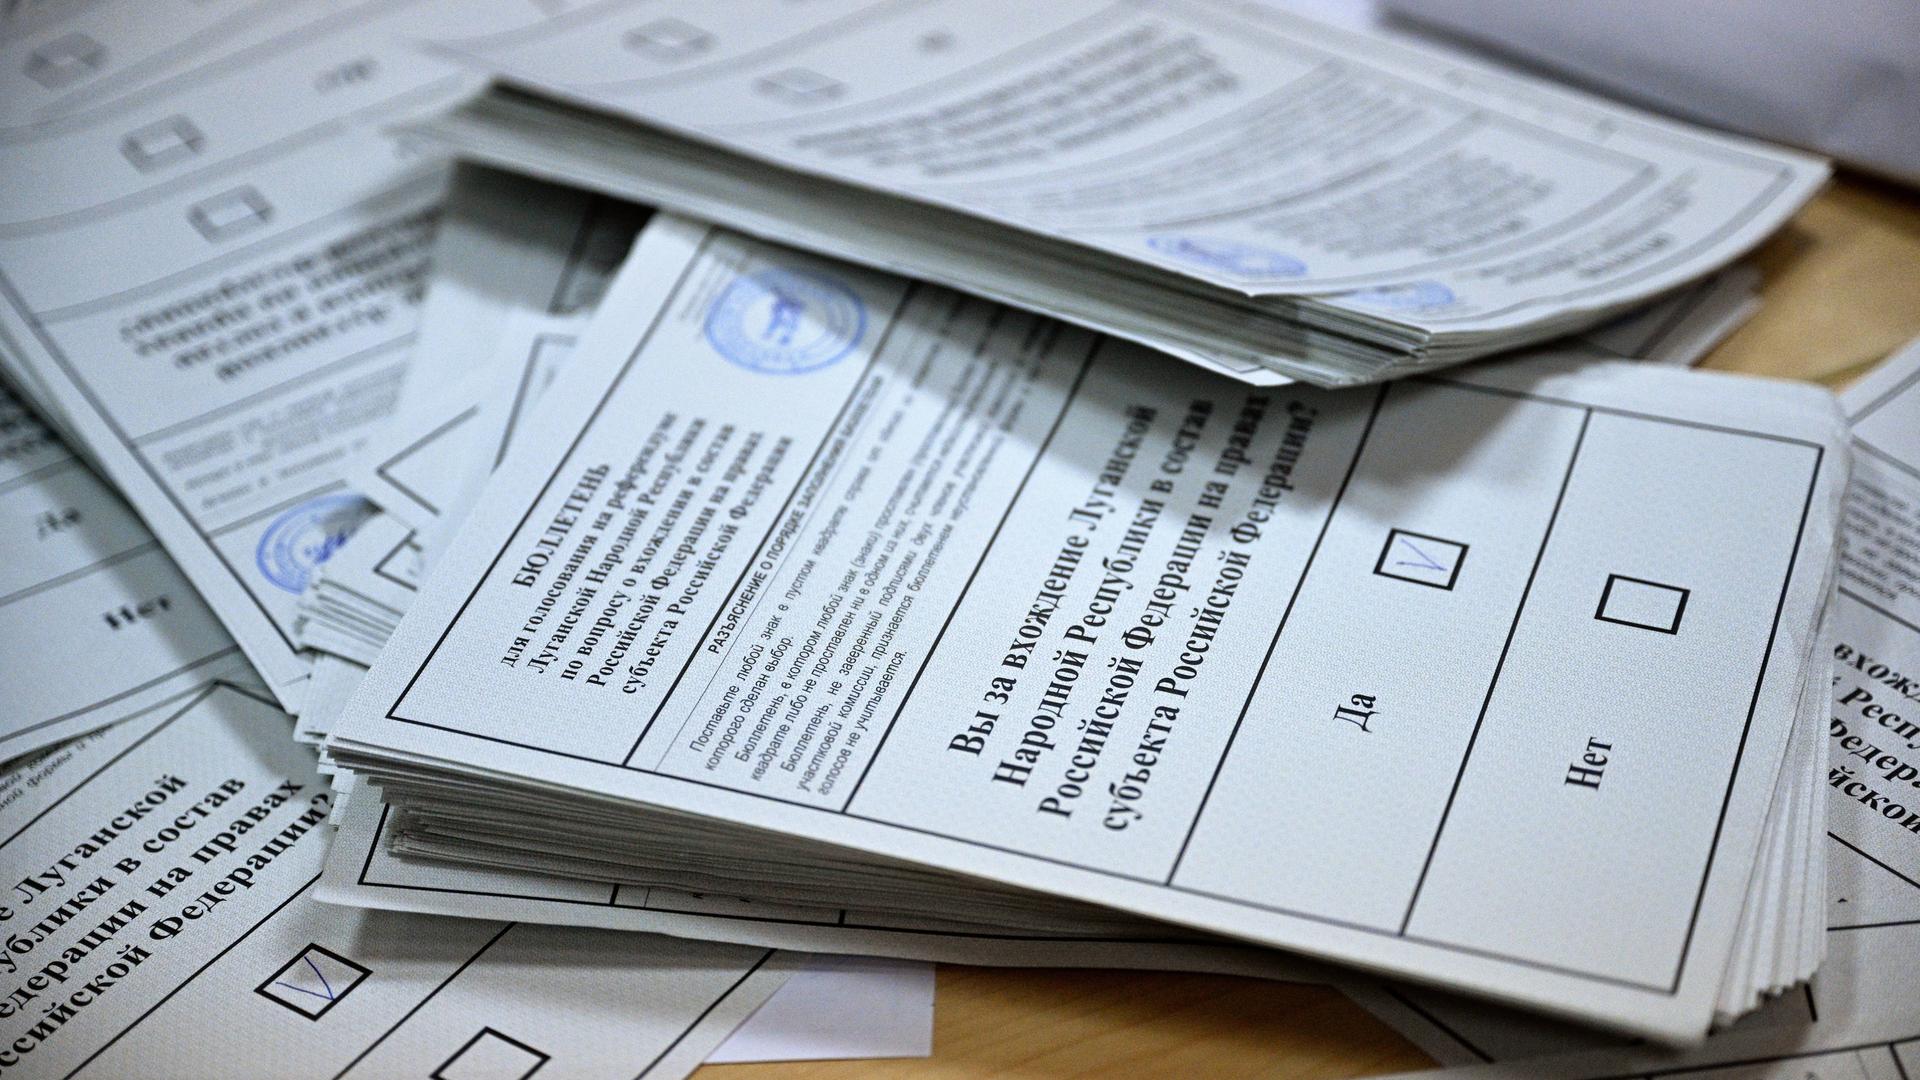 Ausgefüllte Wahlzettel zum Ukraine-Referendum vom 27.09.2022 stapeln sich auf einem Tisch.